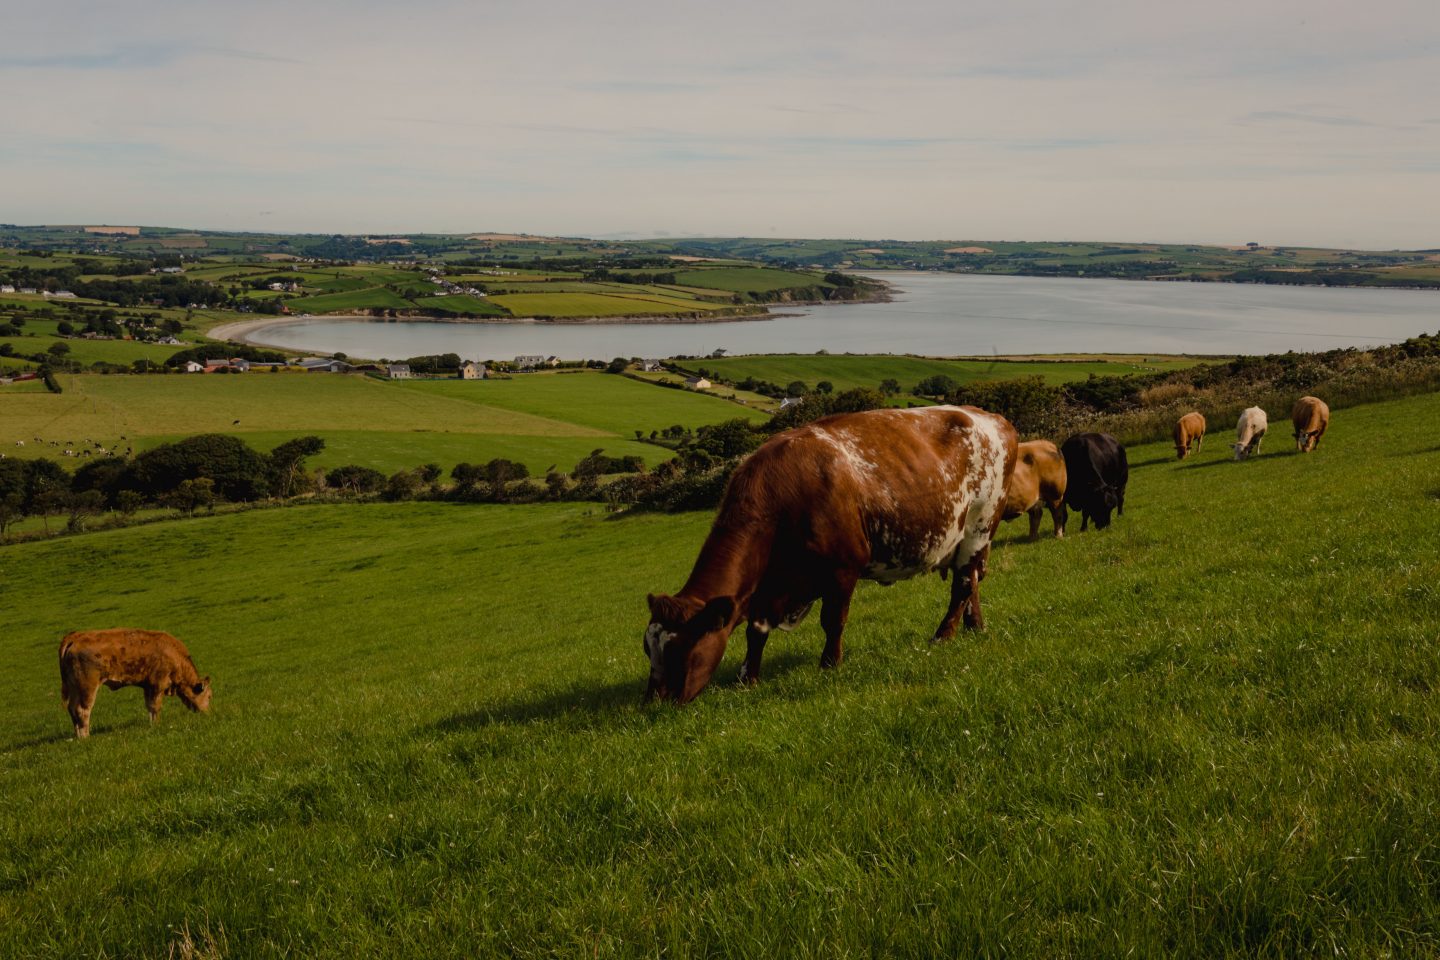 Cattle grazing in rich green fields,